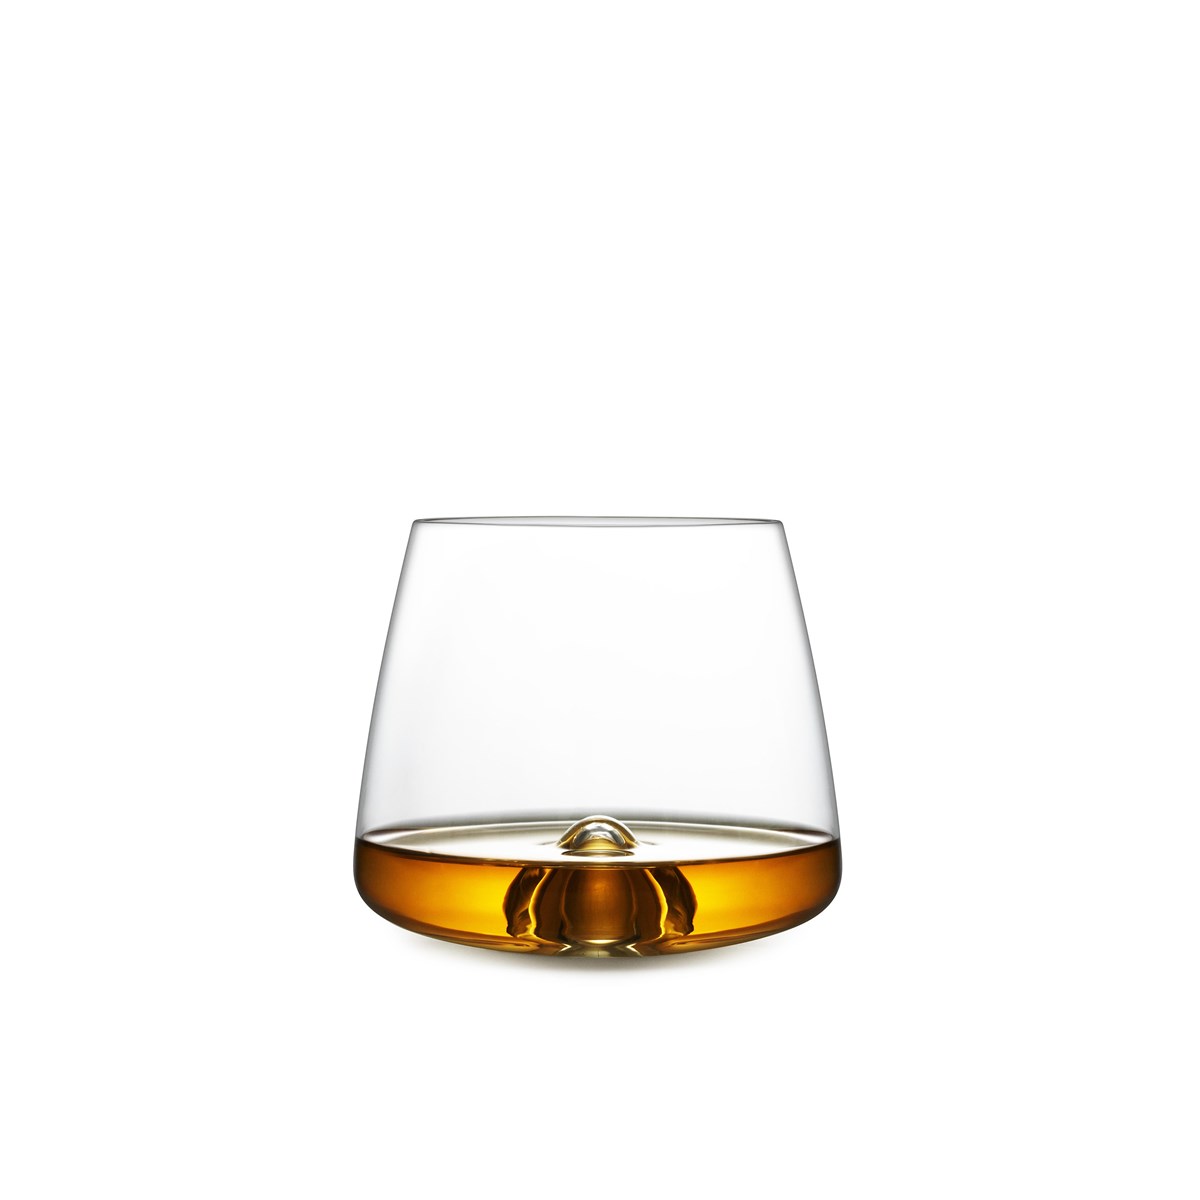 whisky glasses set of 2